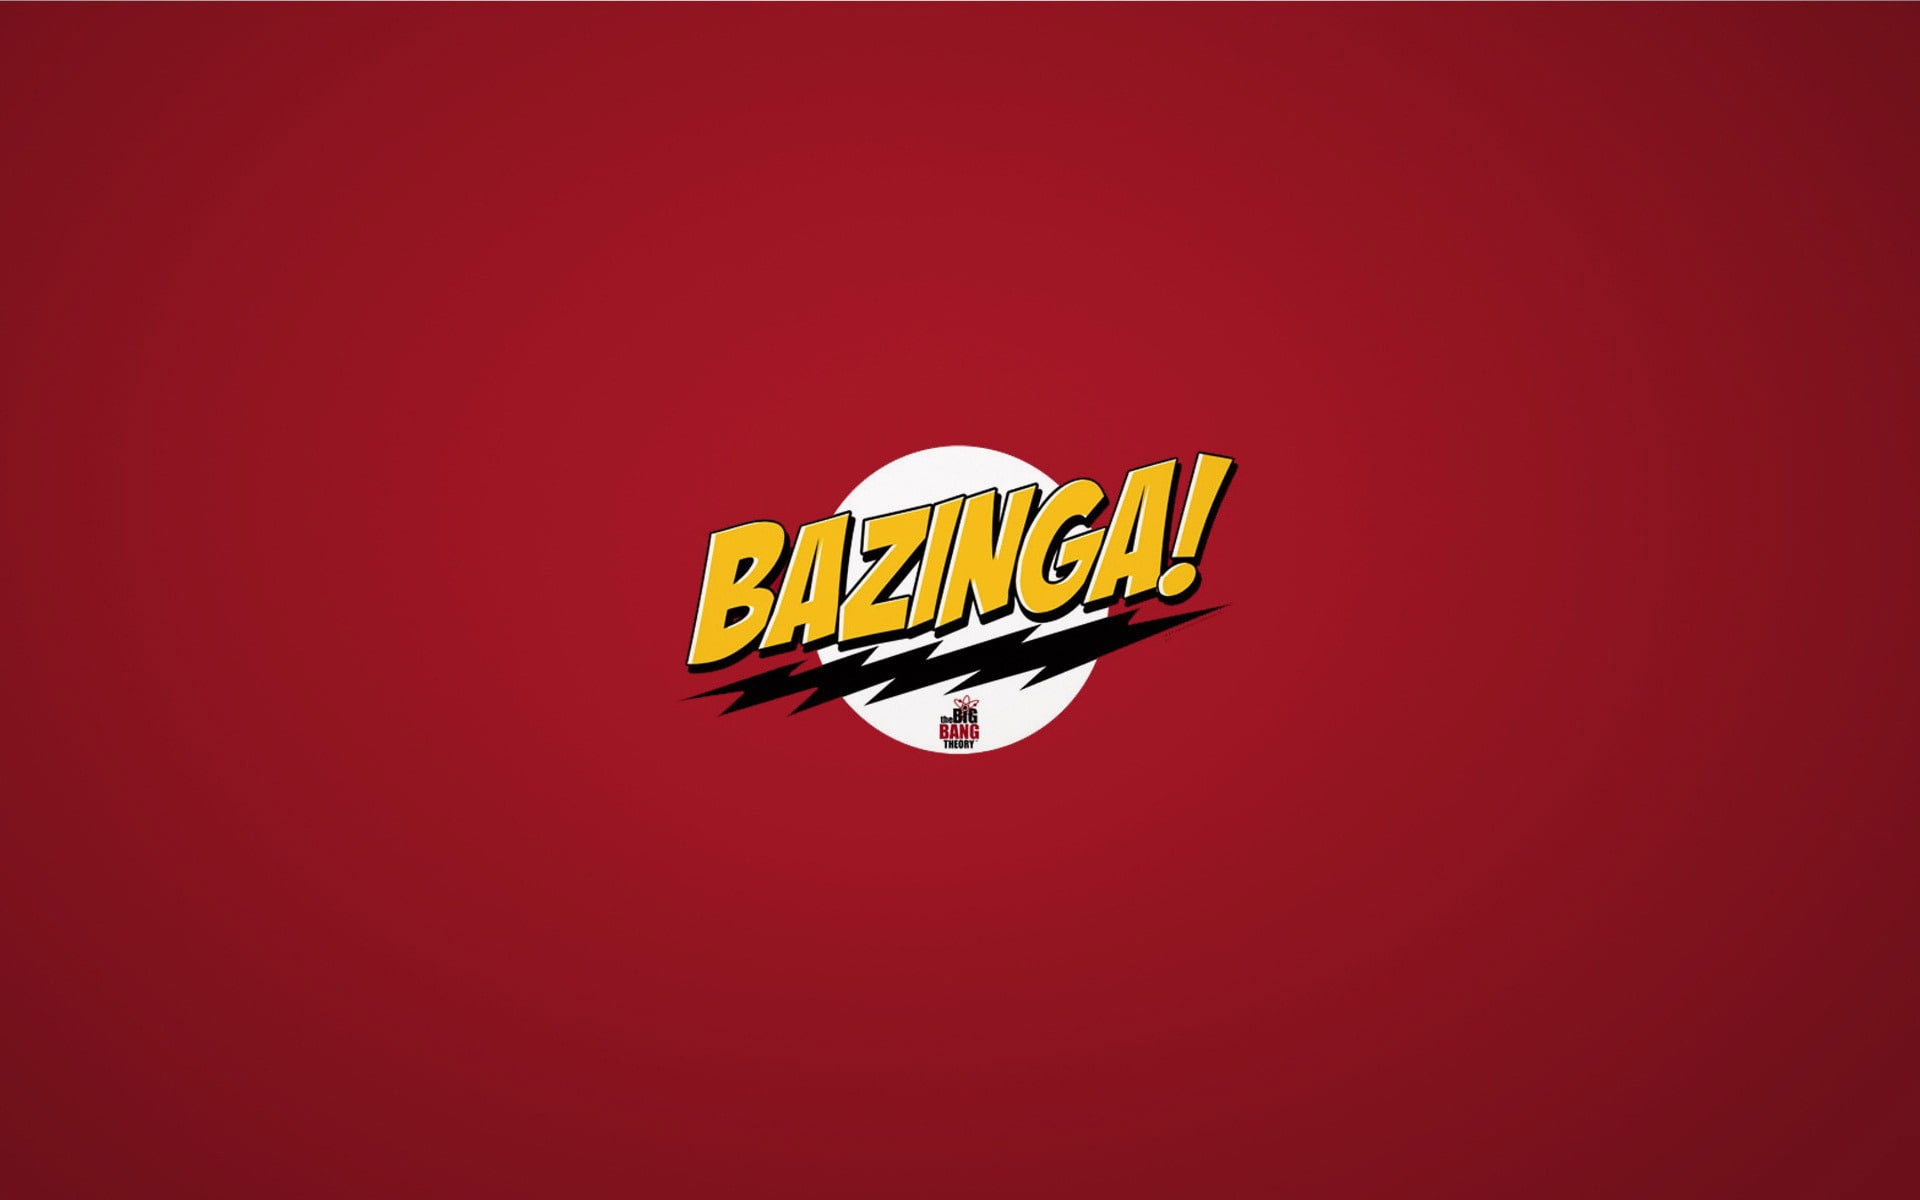 The Big Bang Theory Bazinga wallpaper, bazinga! text, sitcom, comedy, funny